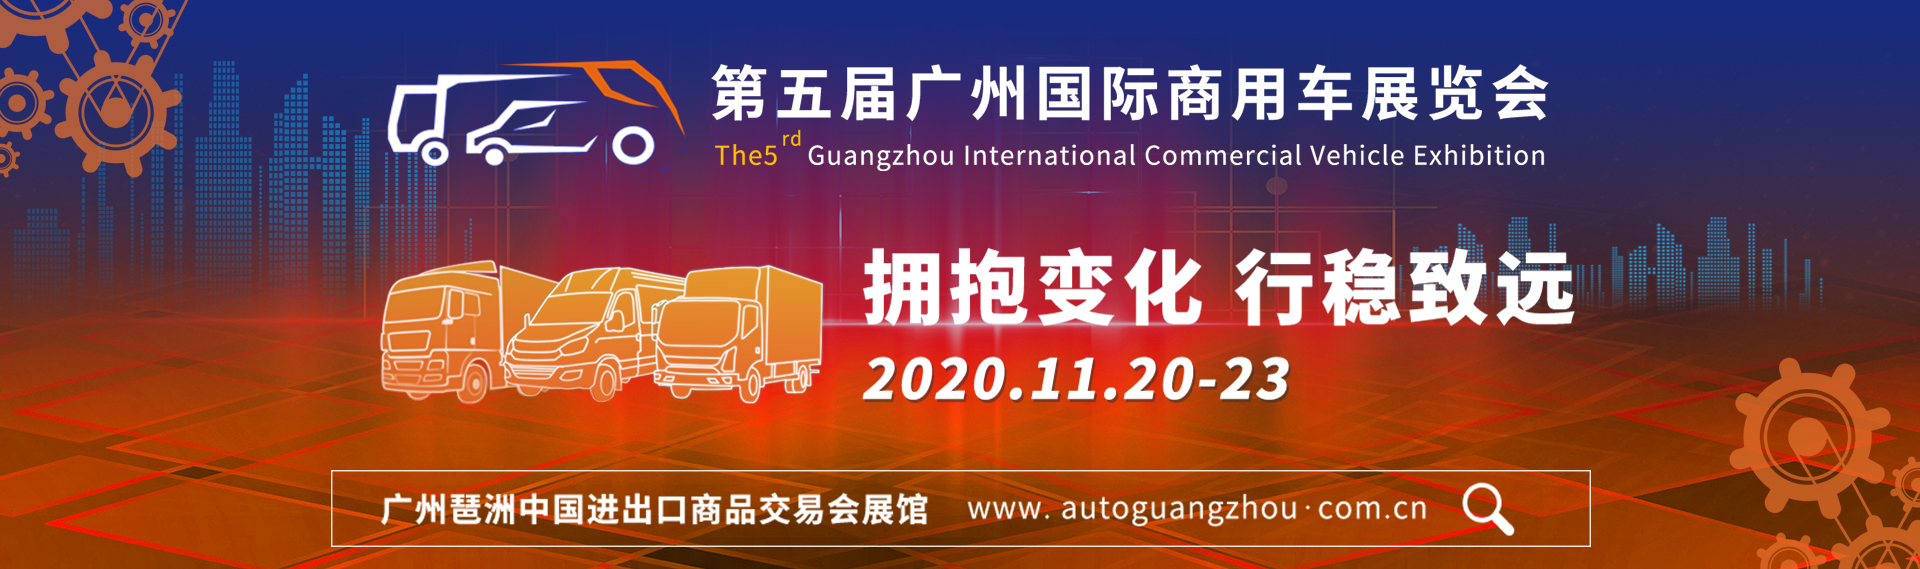 第五届广州国际商用车展览会